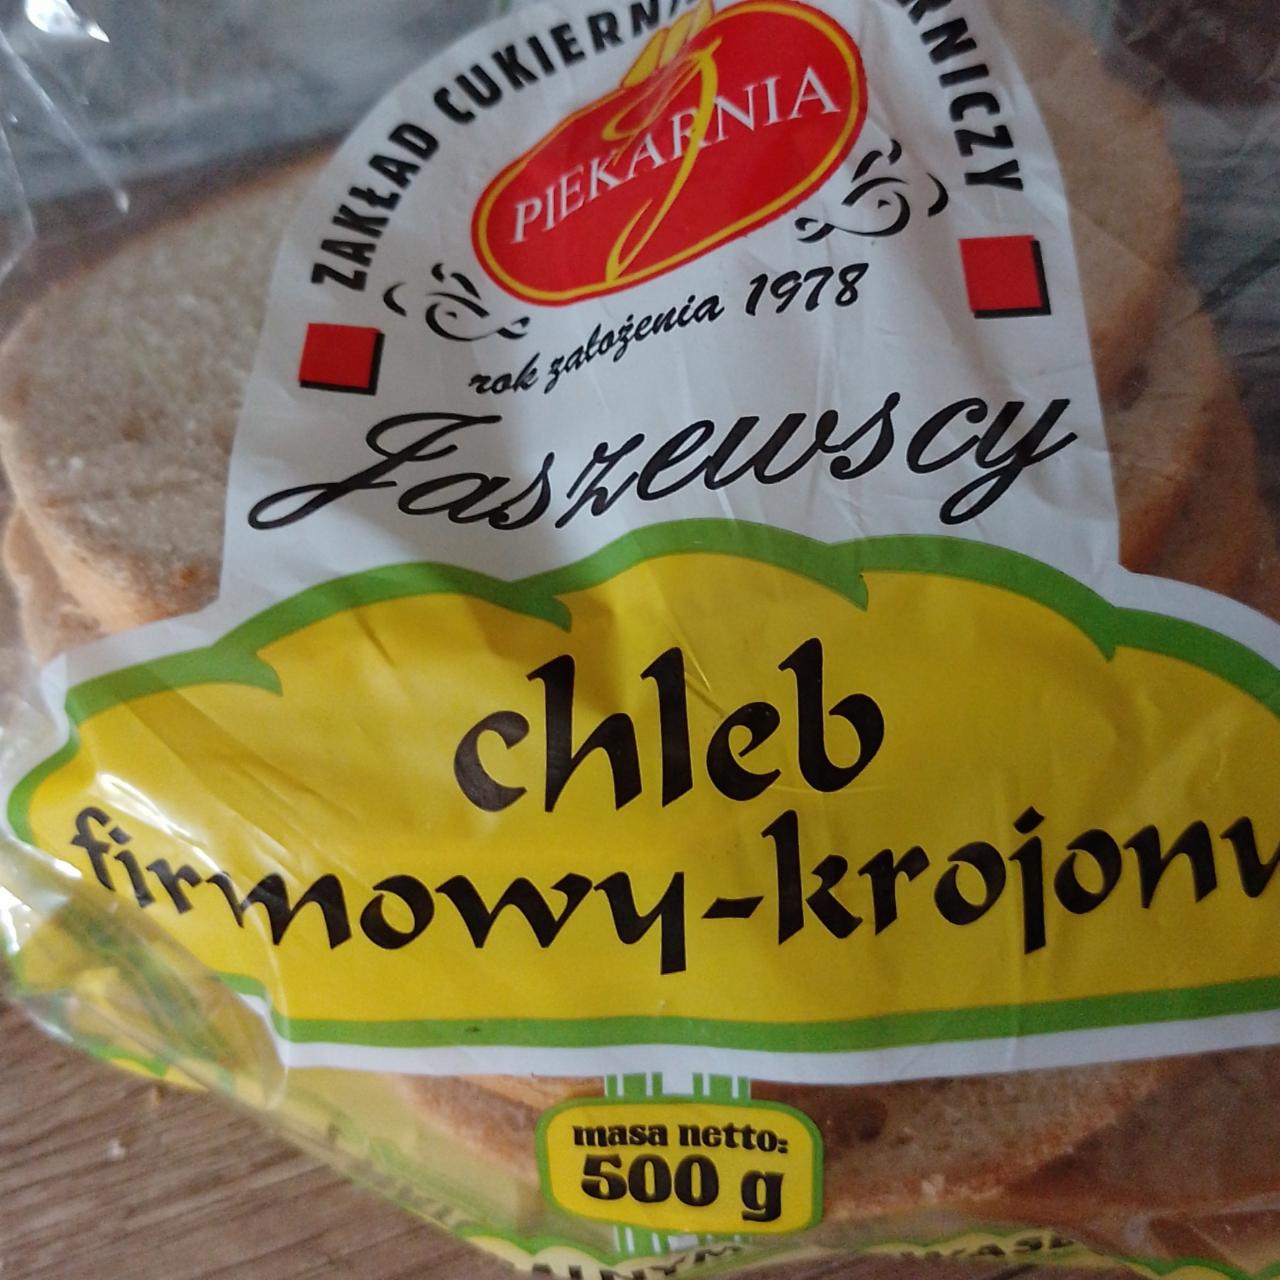 Zdjęcia - chleb firmowy krojony Piekarnia Jaszewscy